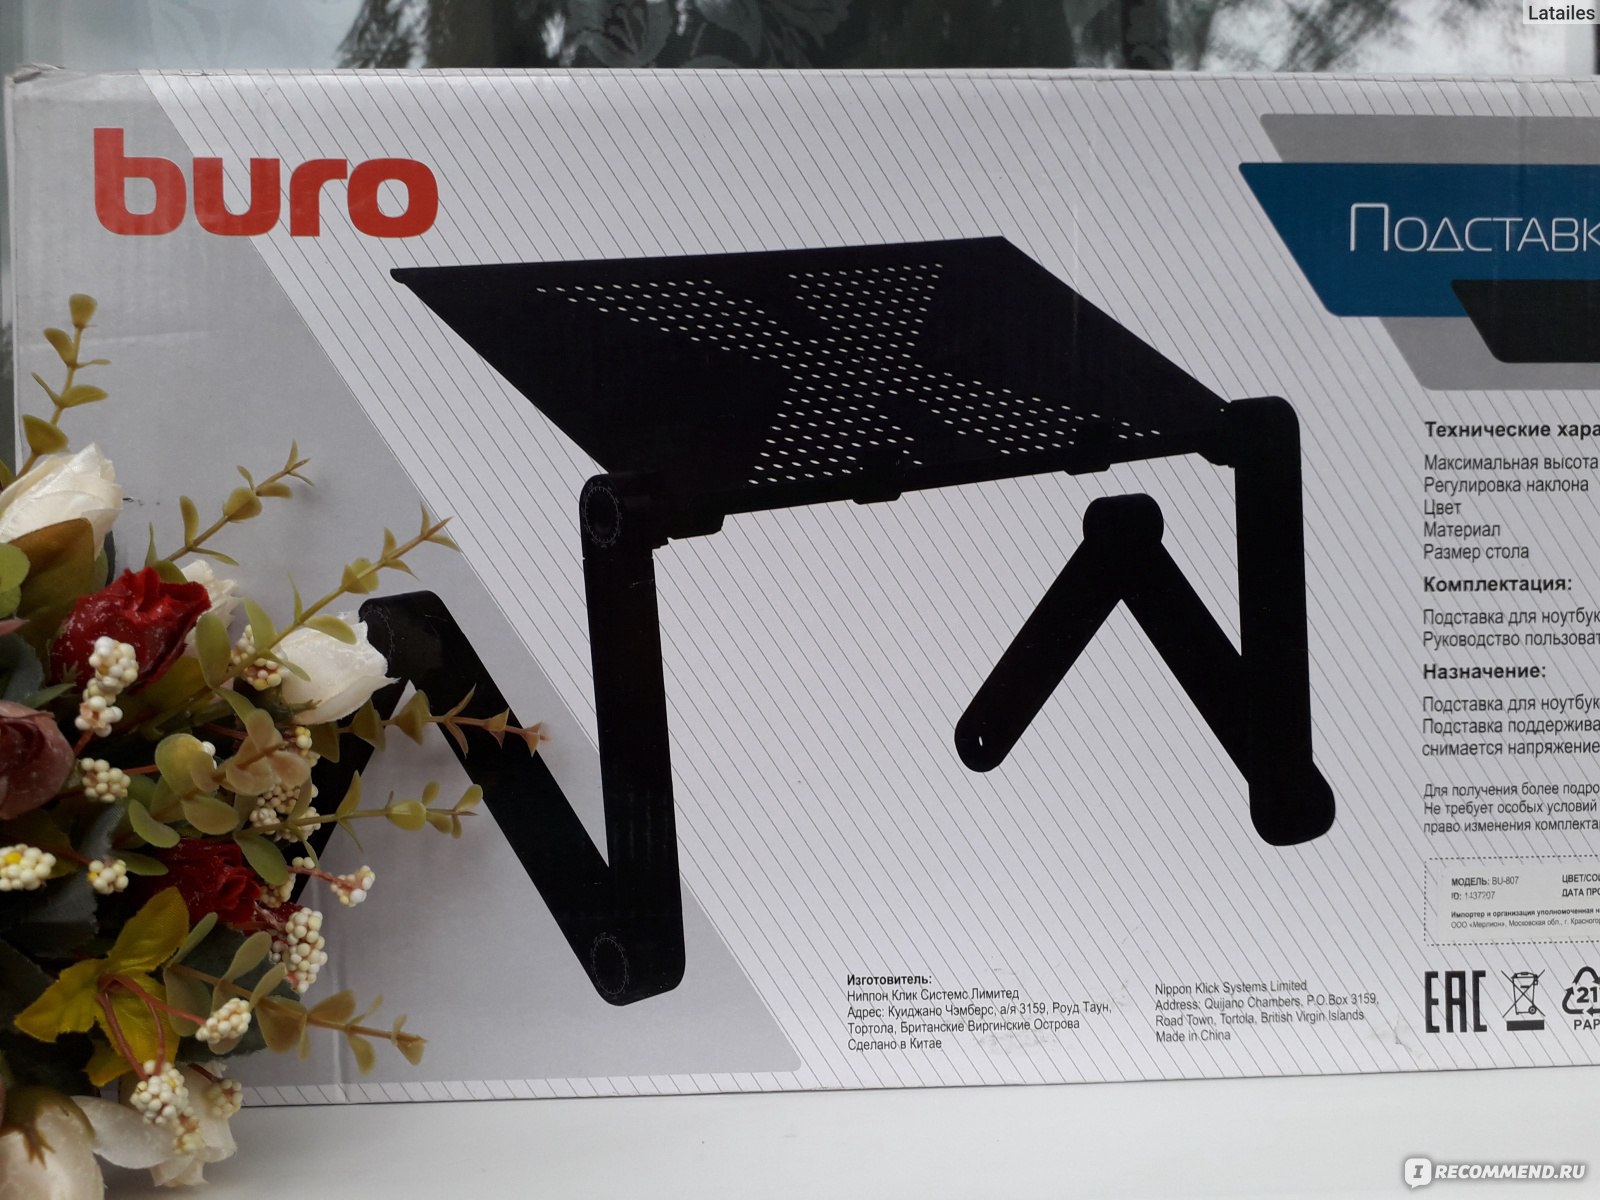 Стол для ноутбука buro bu 807 металл черный